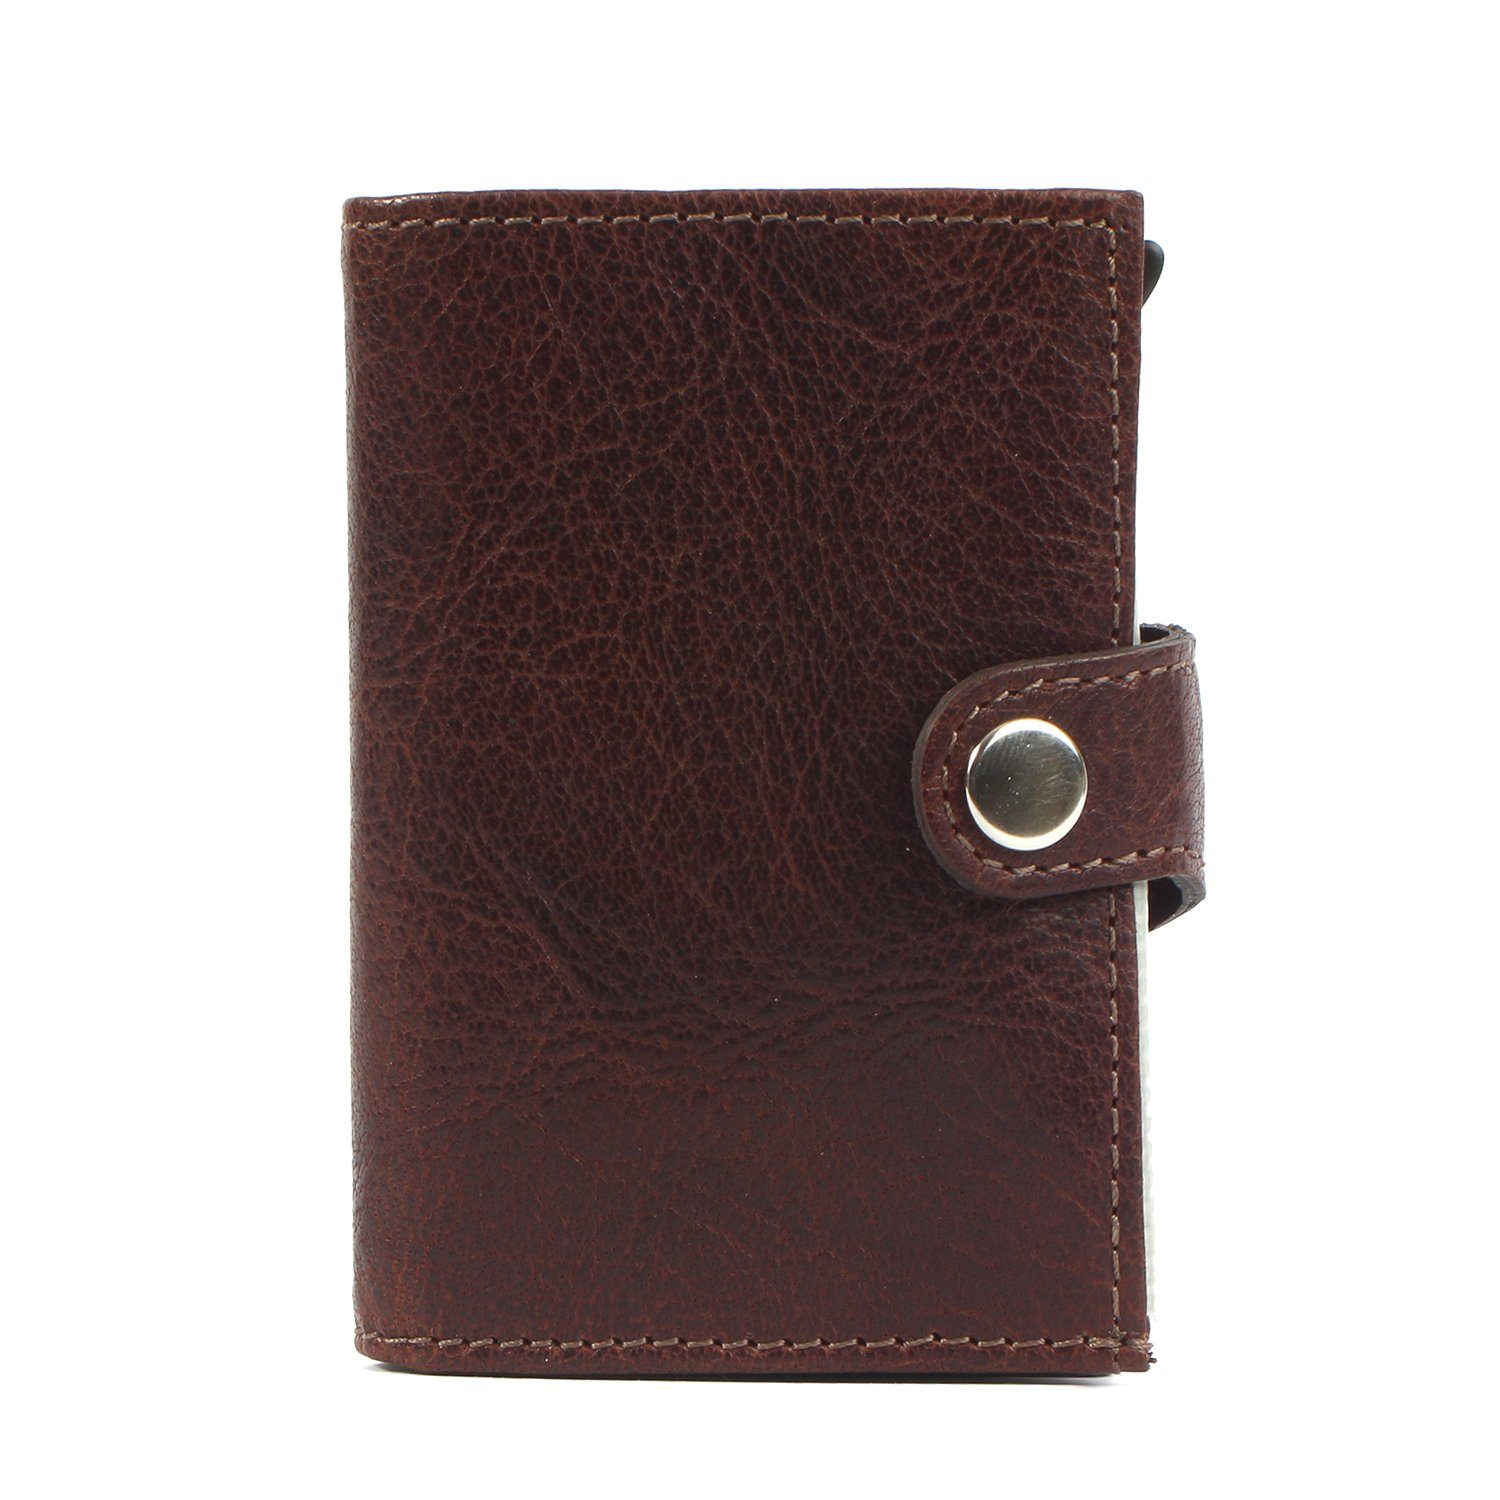 [Qualität garantiert] Margelisch Mini Geldbörse noonyu single brown Kreditkartenbörse leather, Upcycling Leder aus